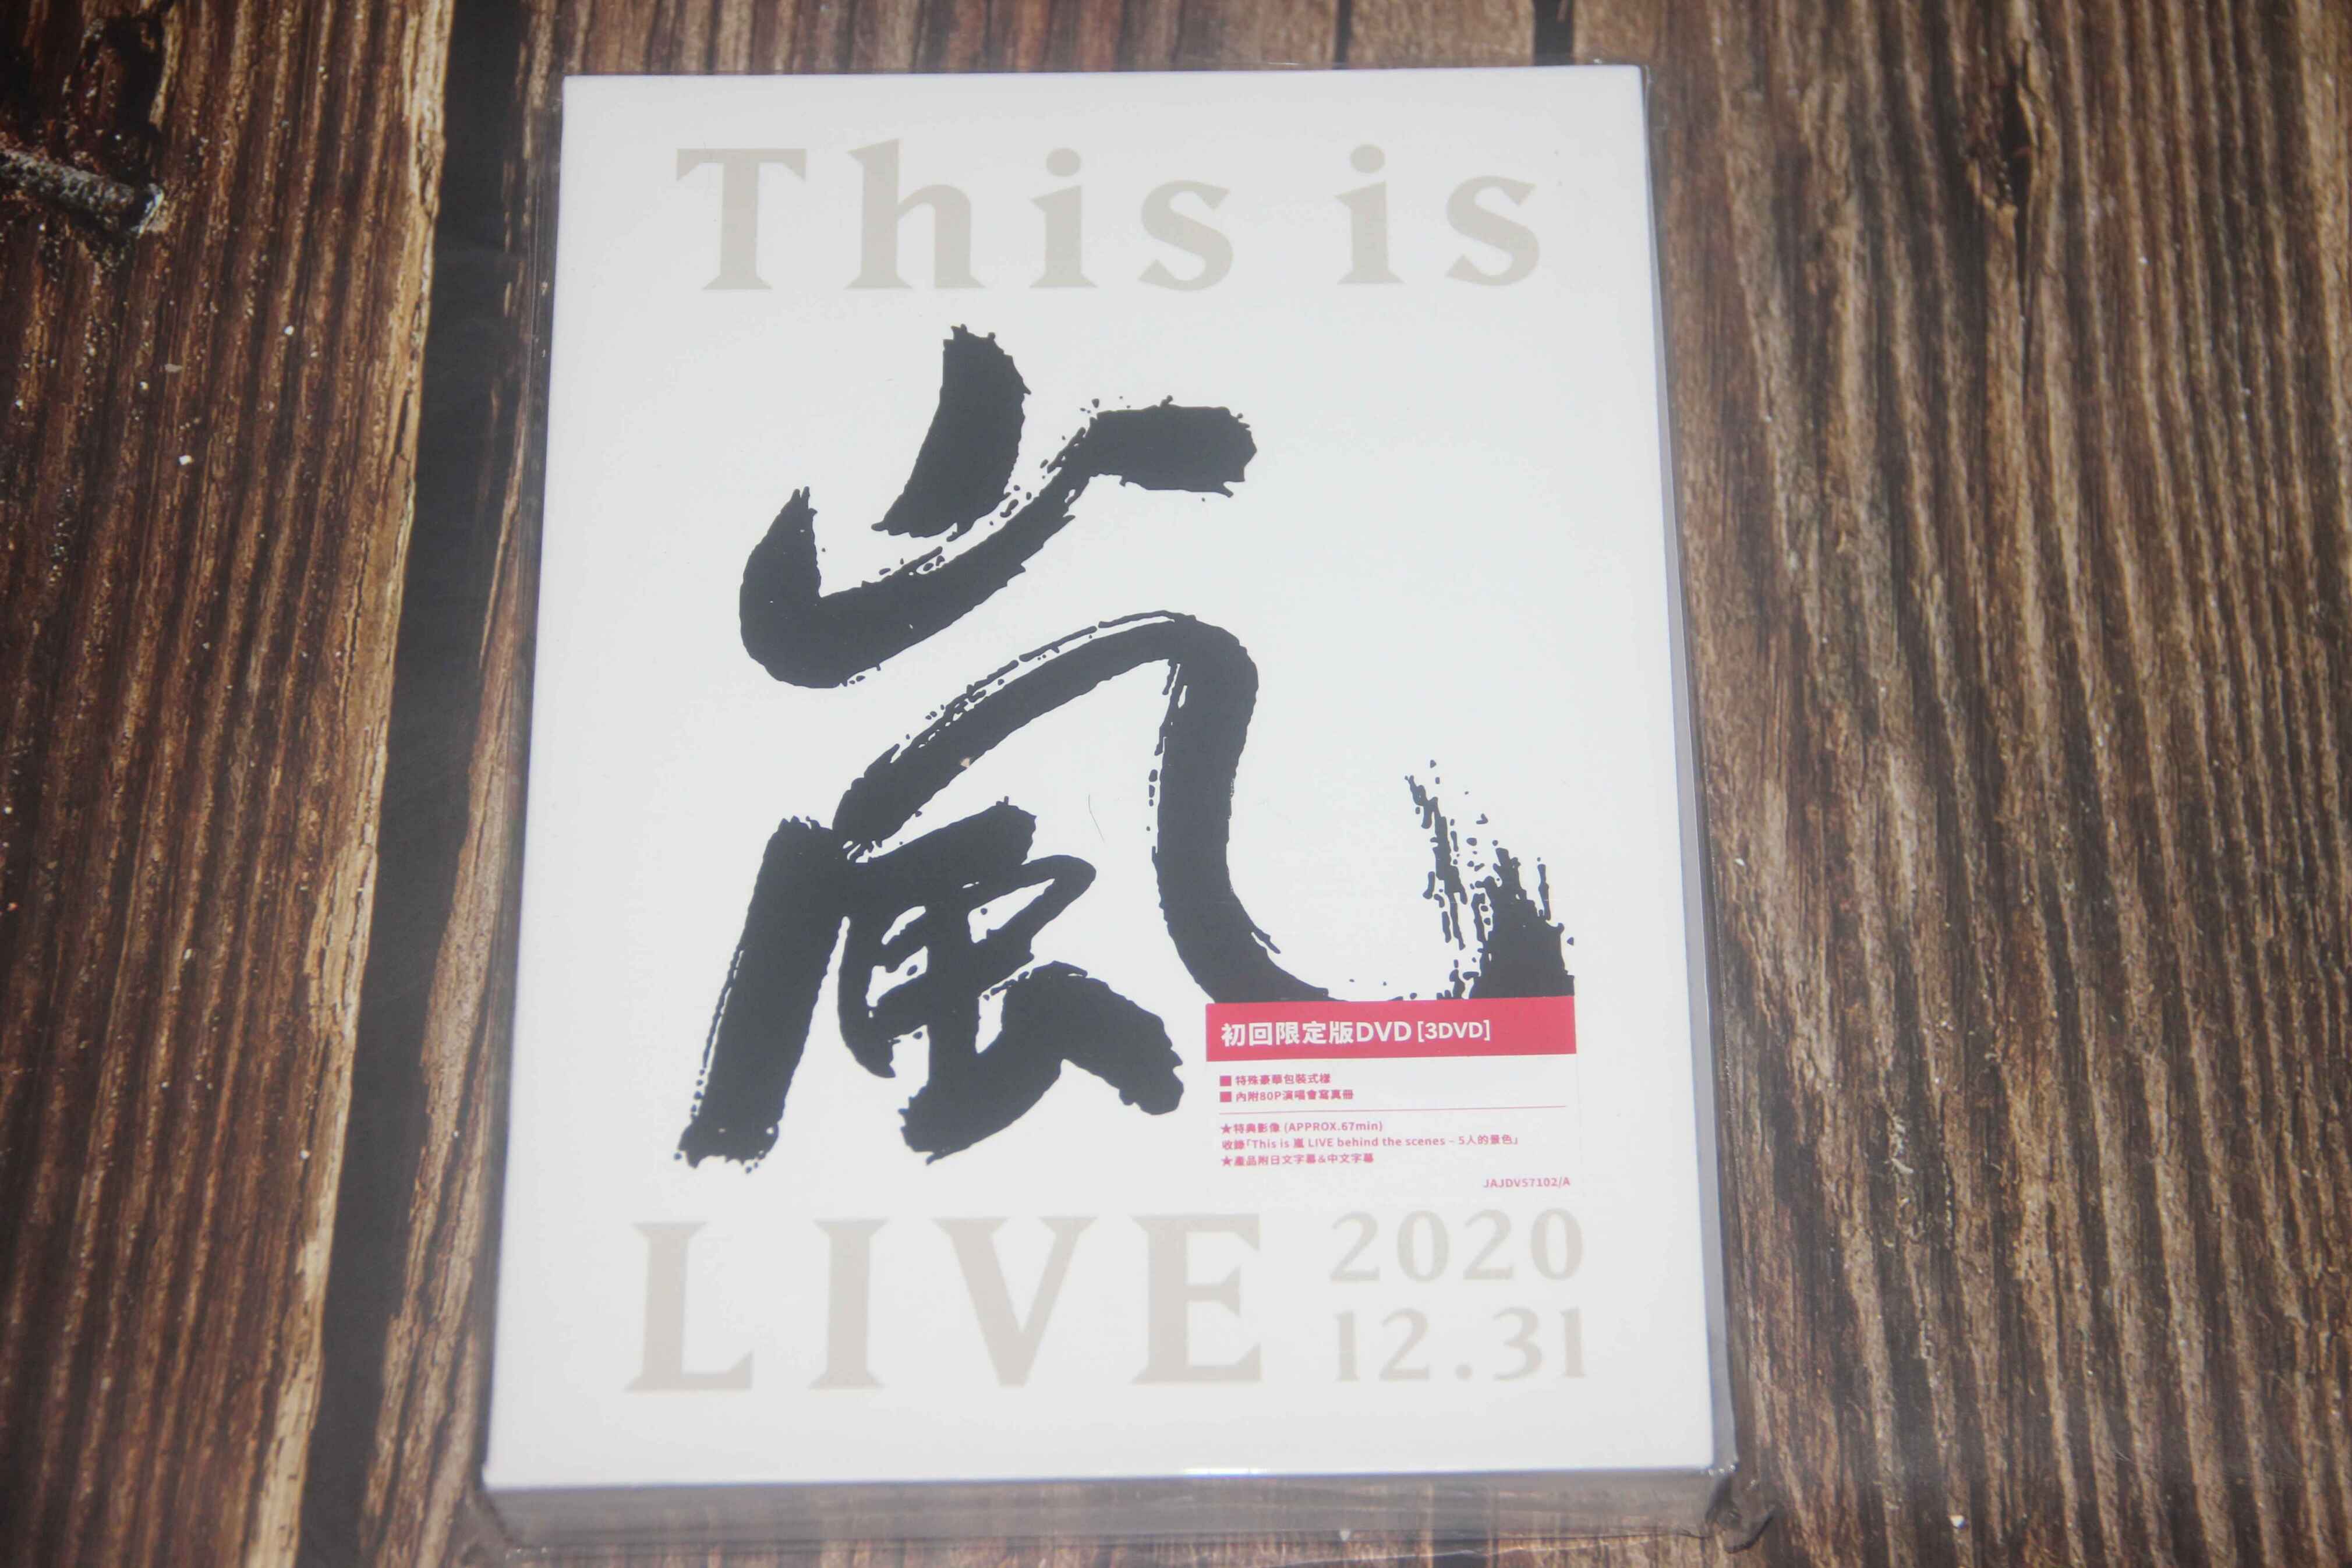 现货】岚ARASHI 5x20 All the BEST1999-2019 通常盘4CD